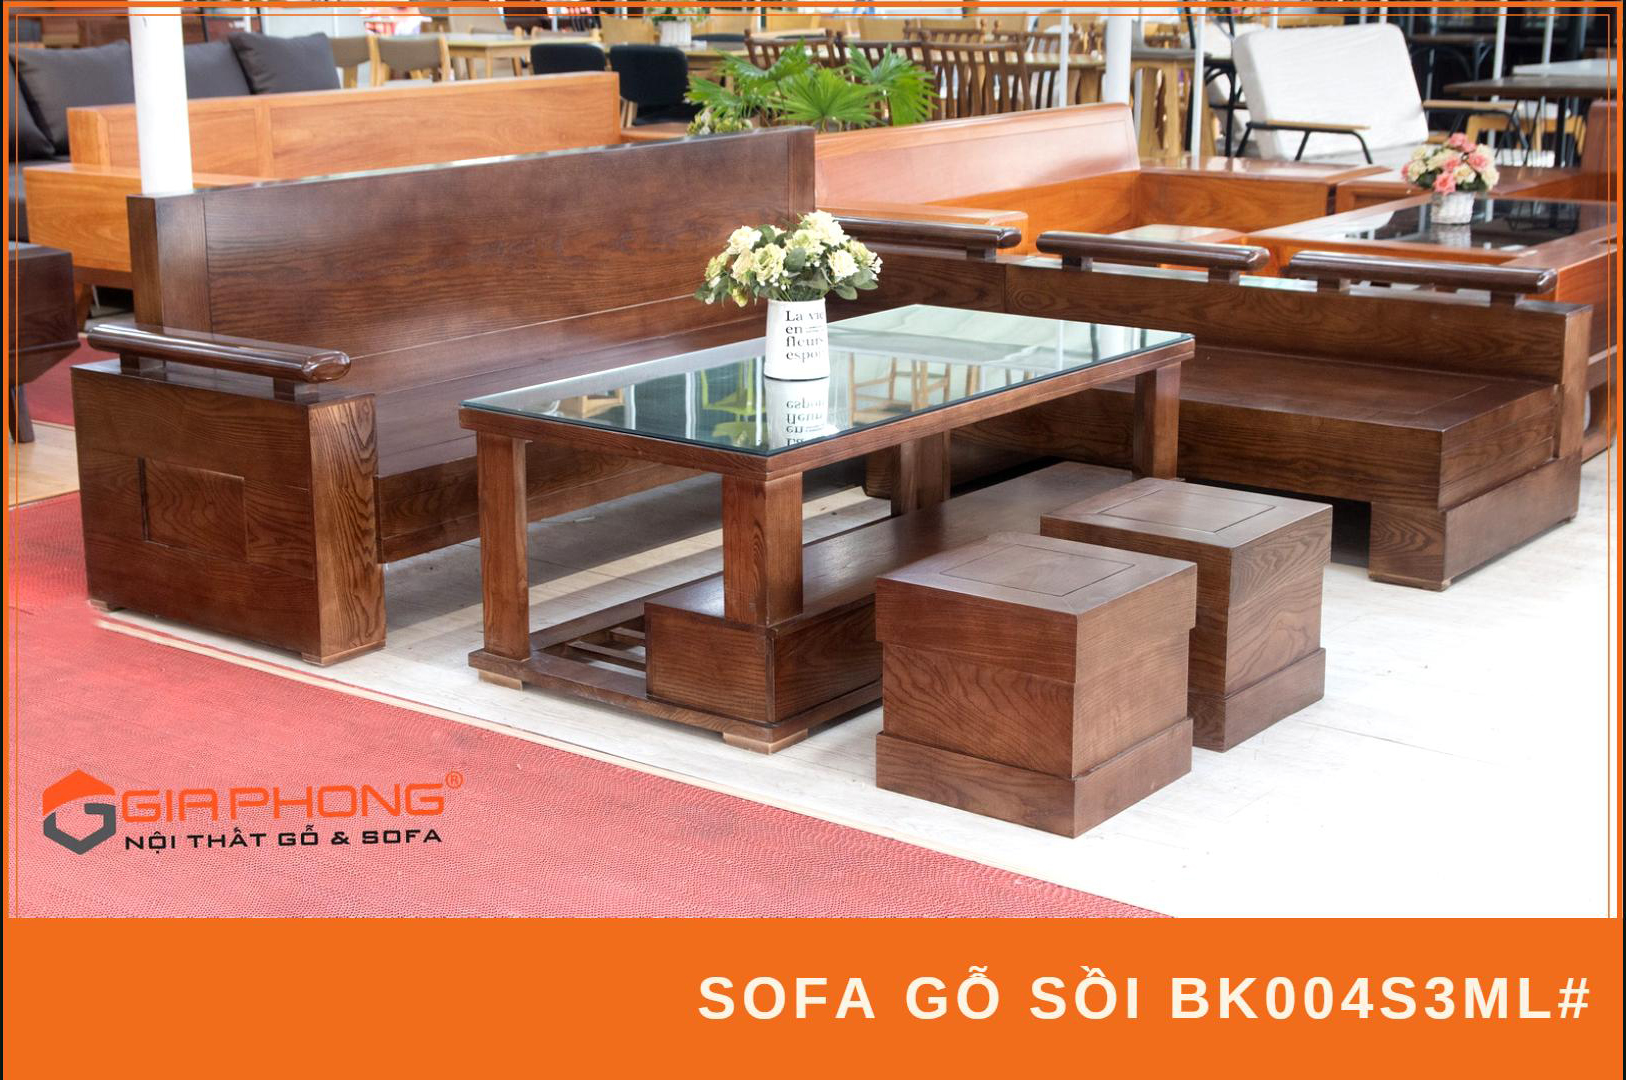 Bộ bàn ghế gỗ được tạo nên từ chất liệu tự nhiên, tôn lên sự bền bỉ và độc đáo của sản phẩm. Với thiết kế tinh tế và sự kết hợp tạo hình, chúng đem đến cho không gian nhà bạn một vẻ đẹp tự nhiên và sang trọng cùng các tính năng có thể tùy biến cho nhu cầu sử dụng.